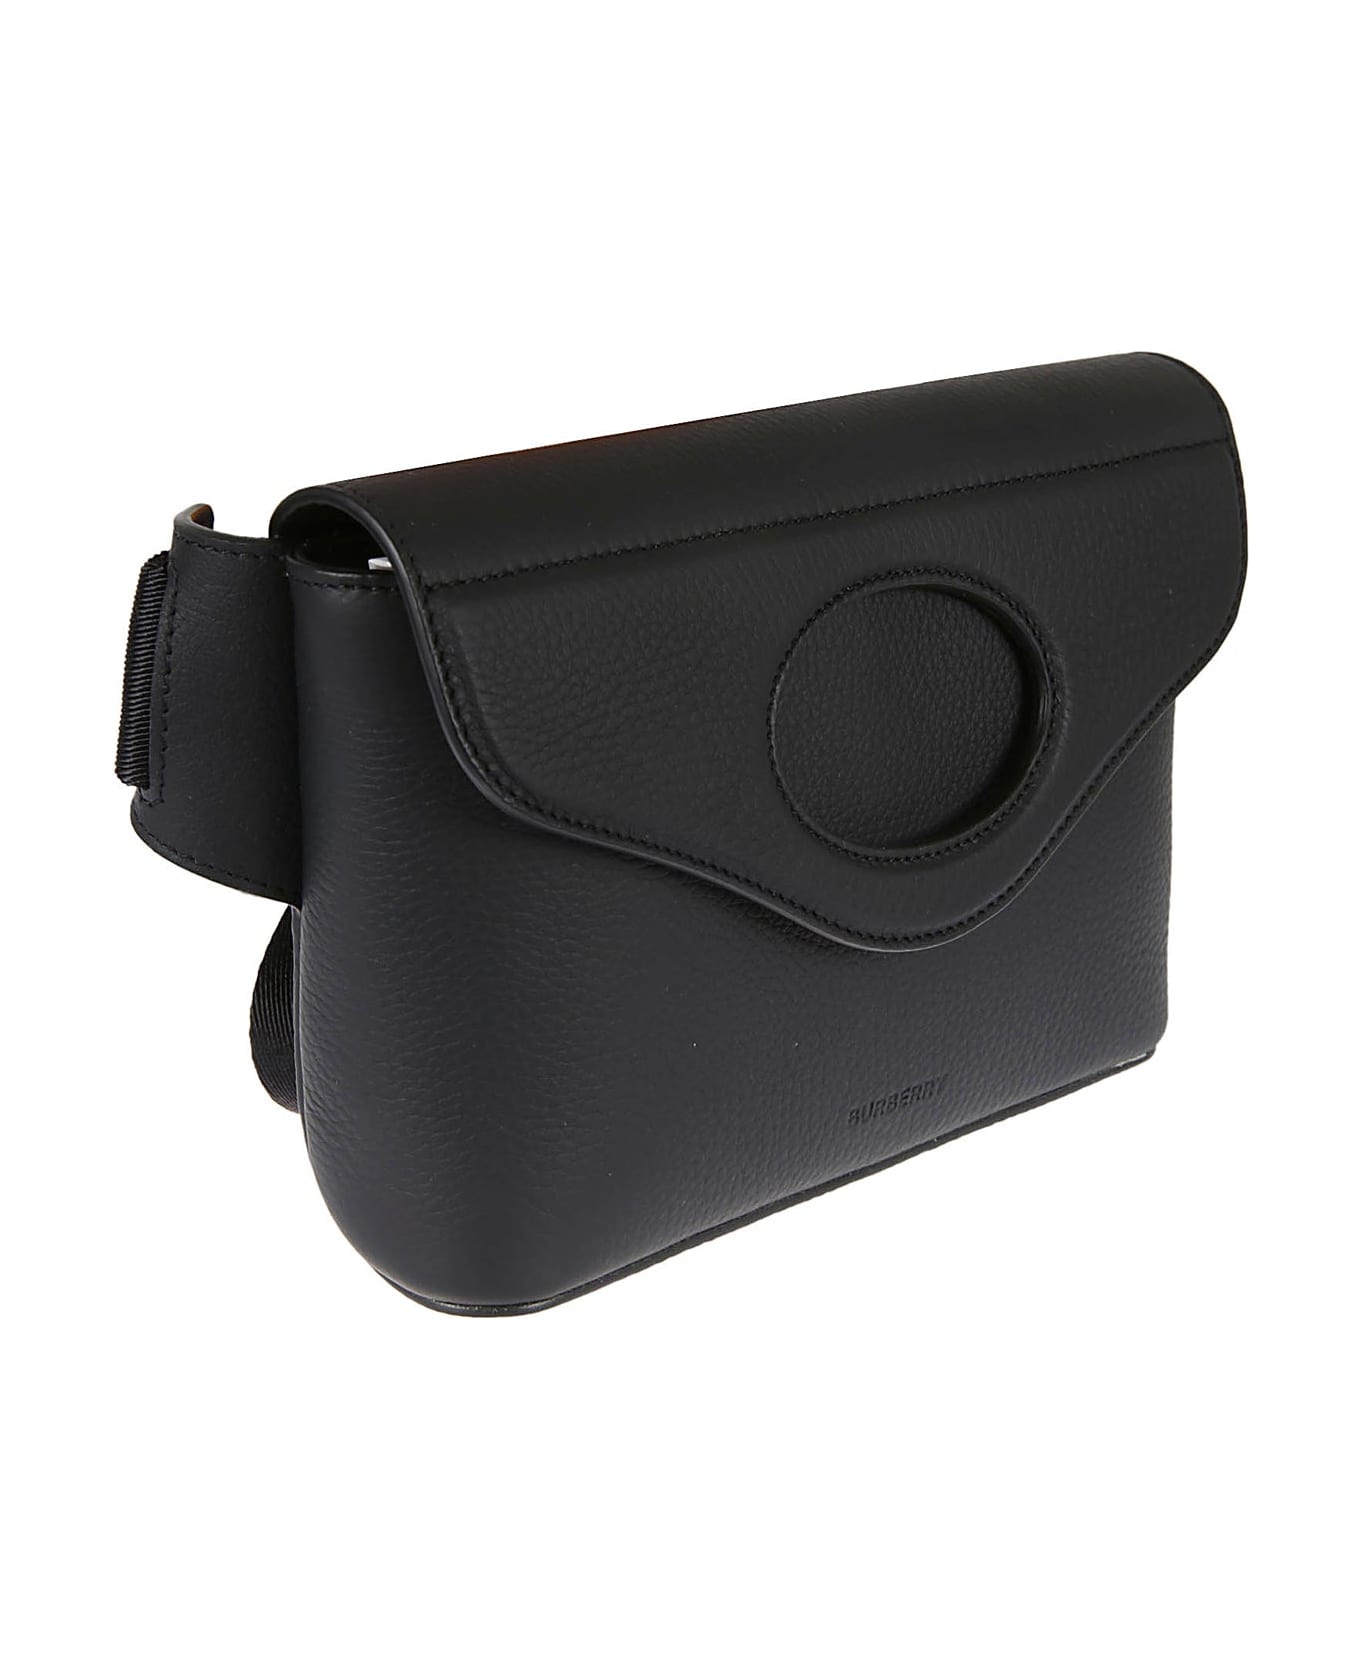 Burberry Leather Belt Bag - Black